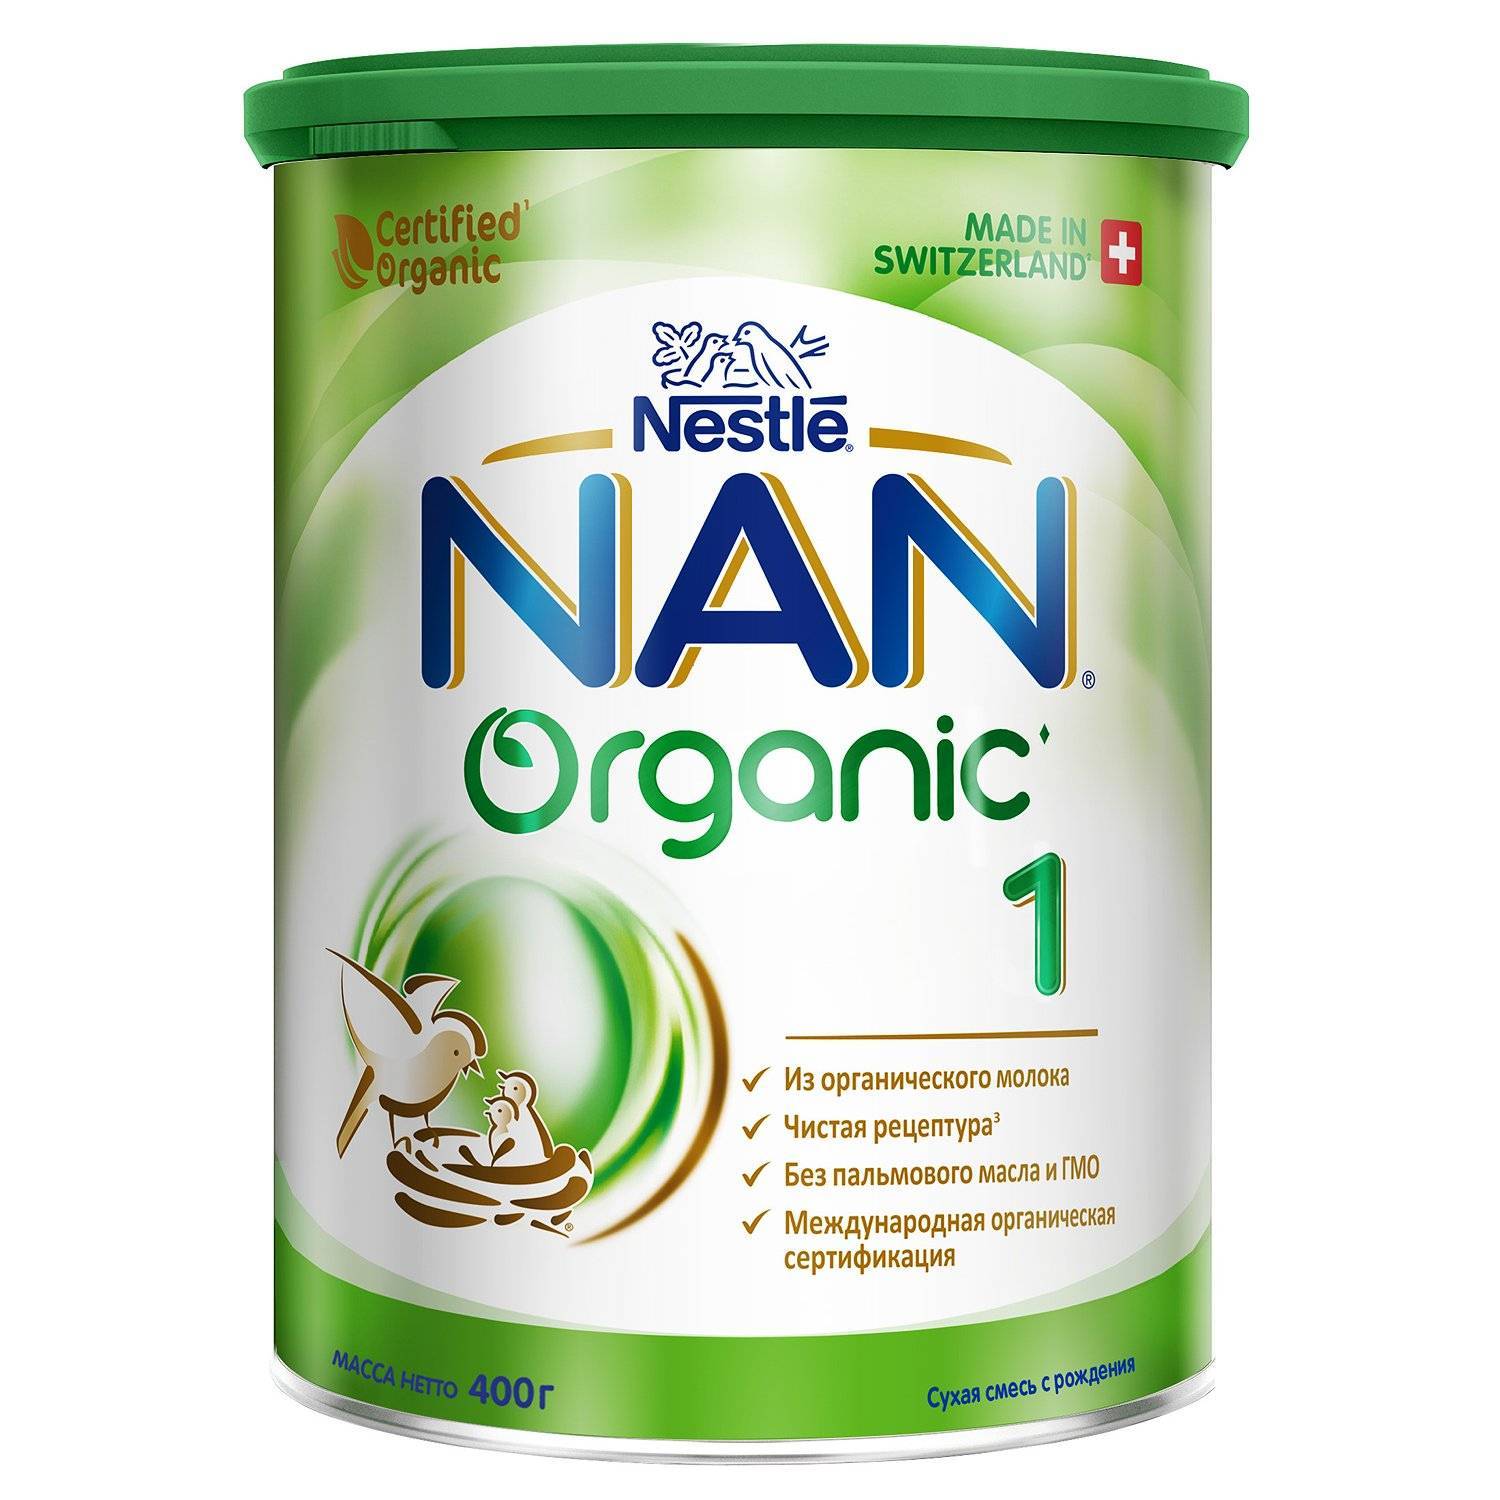 Готовая смесь нан. Смесь nan (Nestlé) 2 Organic (c 6 месяцев) 400 г. Нан 3 цена 900 грамм.